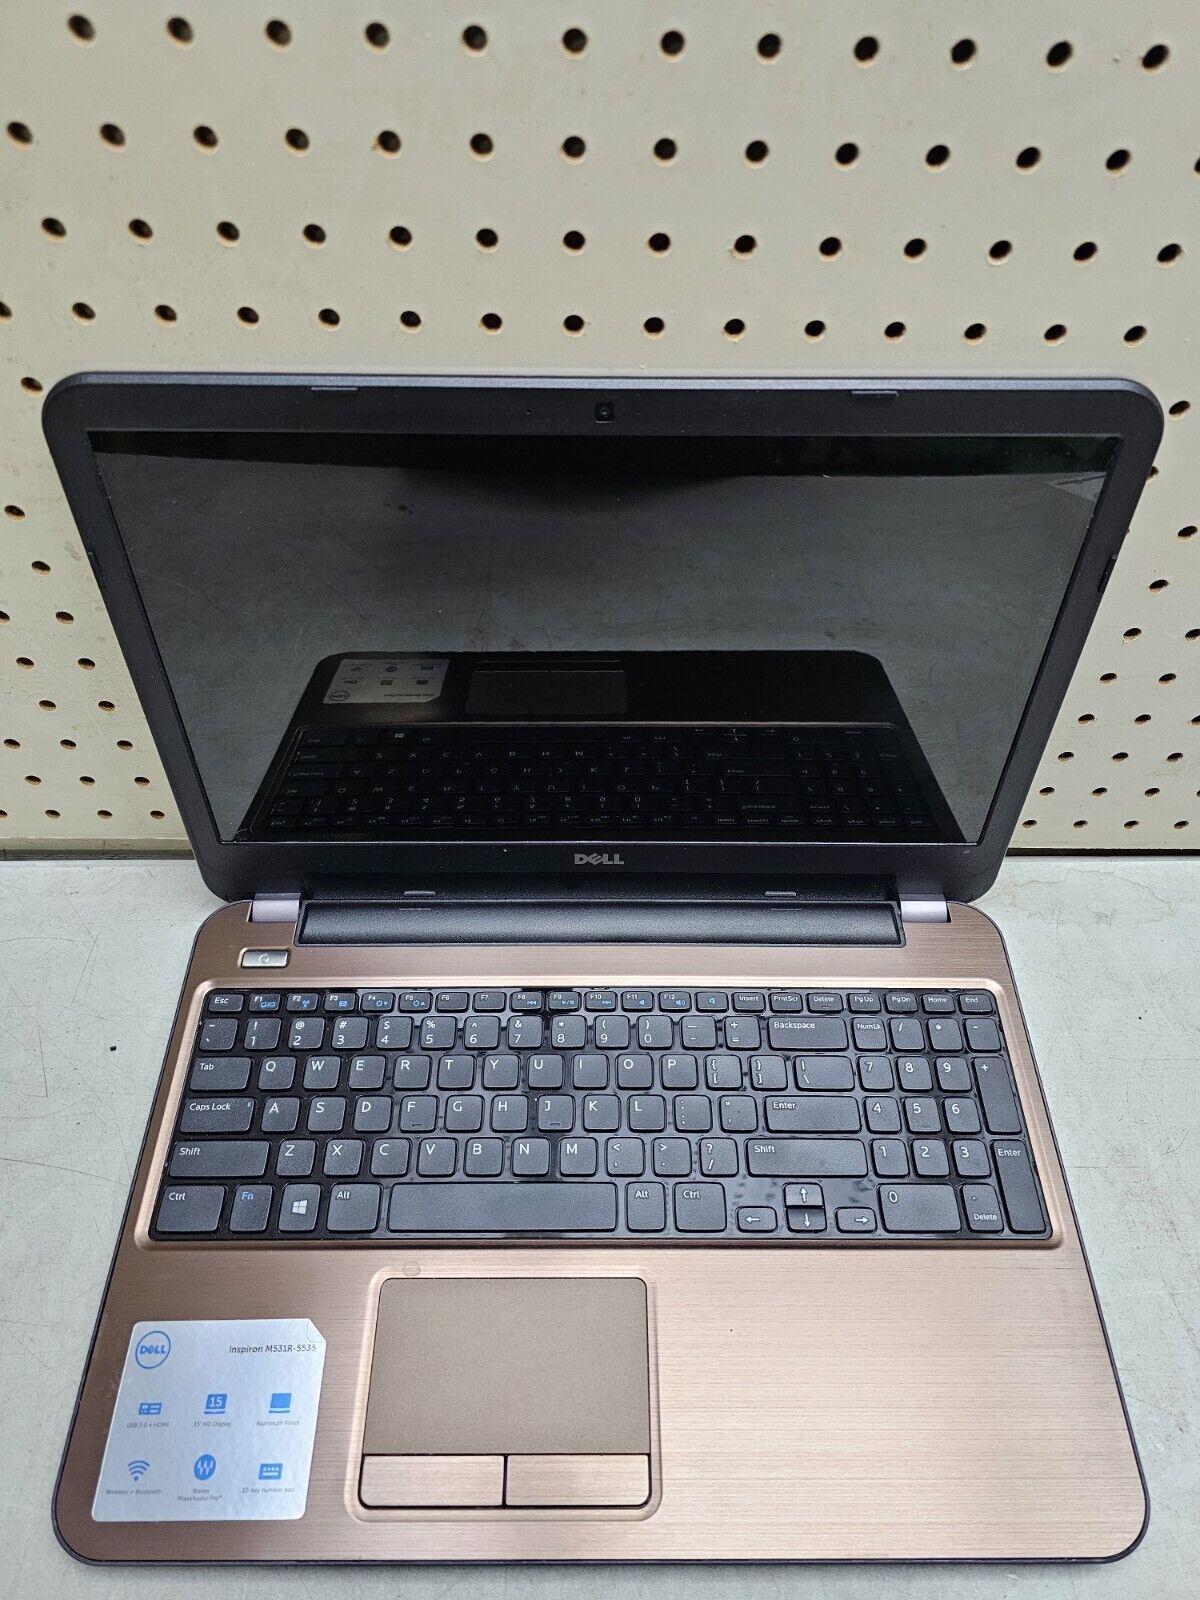 Dell Inspiron M531r-5535 Laptop - AMD A10-5745m - 8GB RAM - 1TB HDD - Windows 10